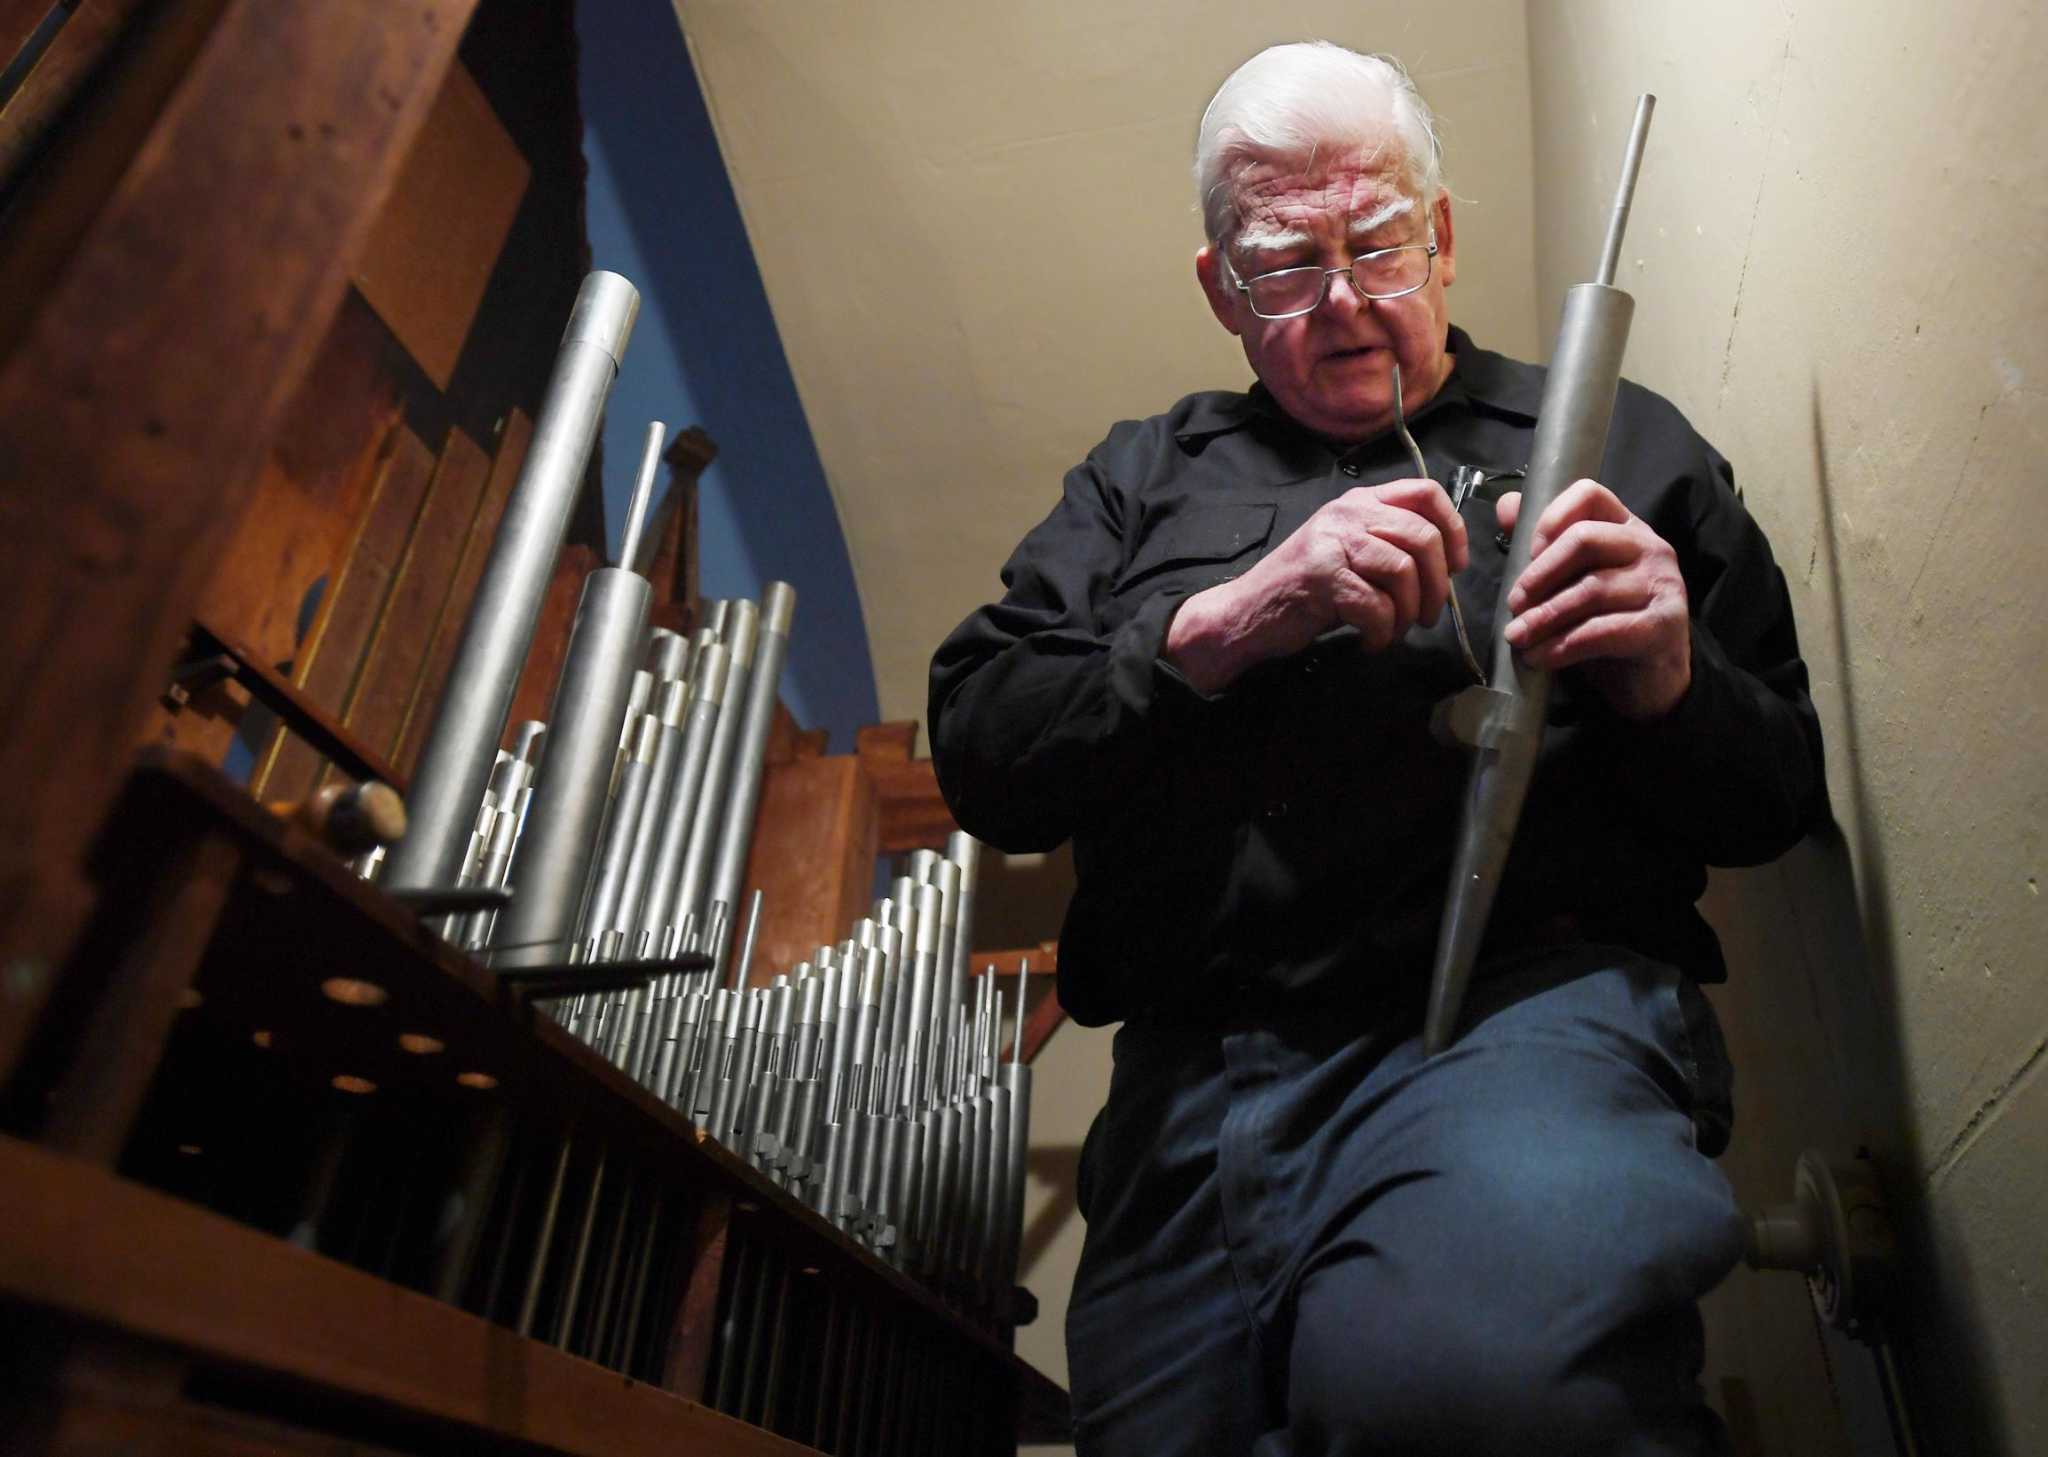 senior citizen amateur organists